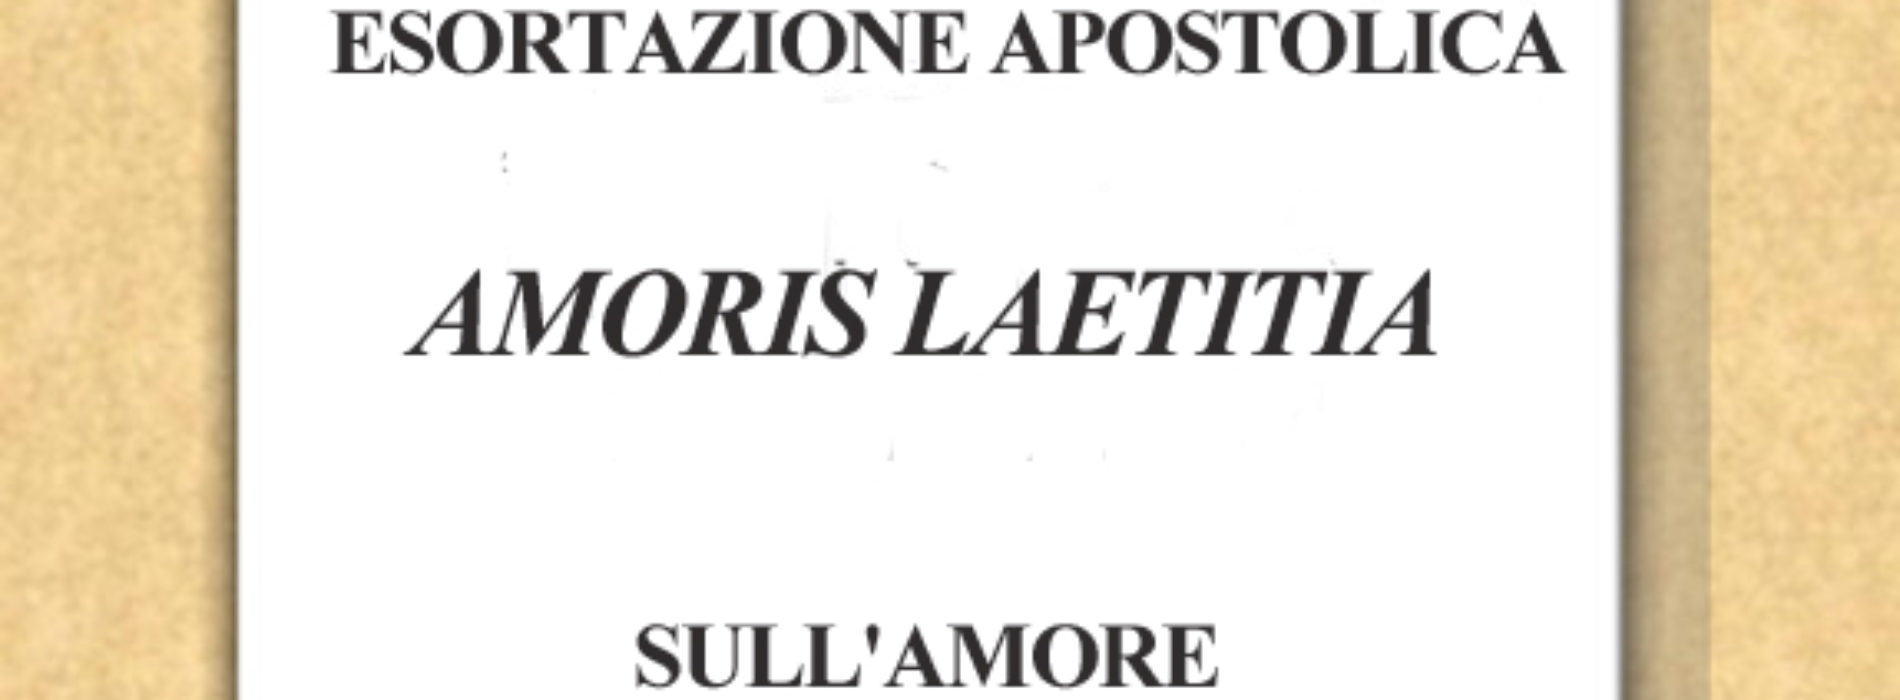 Amoris Laetitia, tema Pastorale dell’anno 2016/17